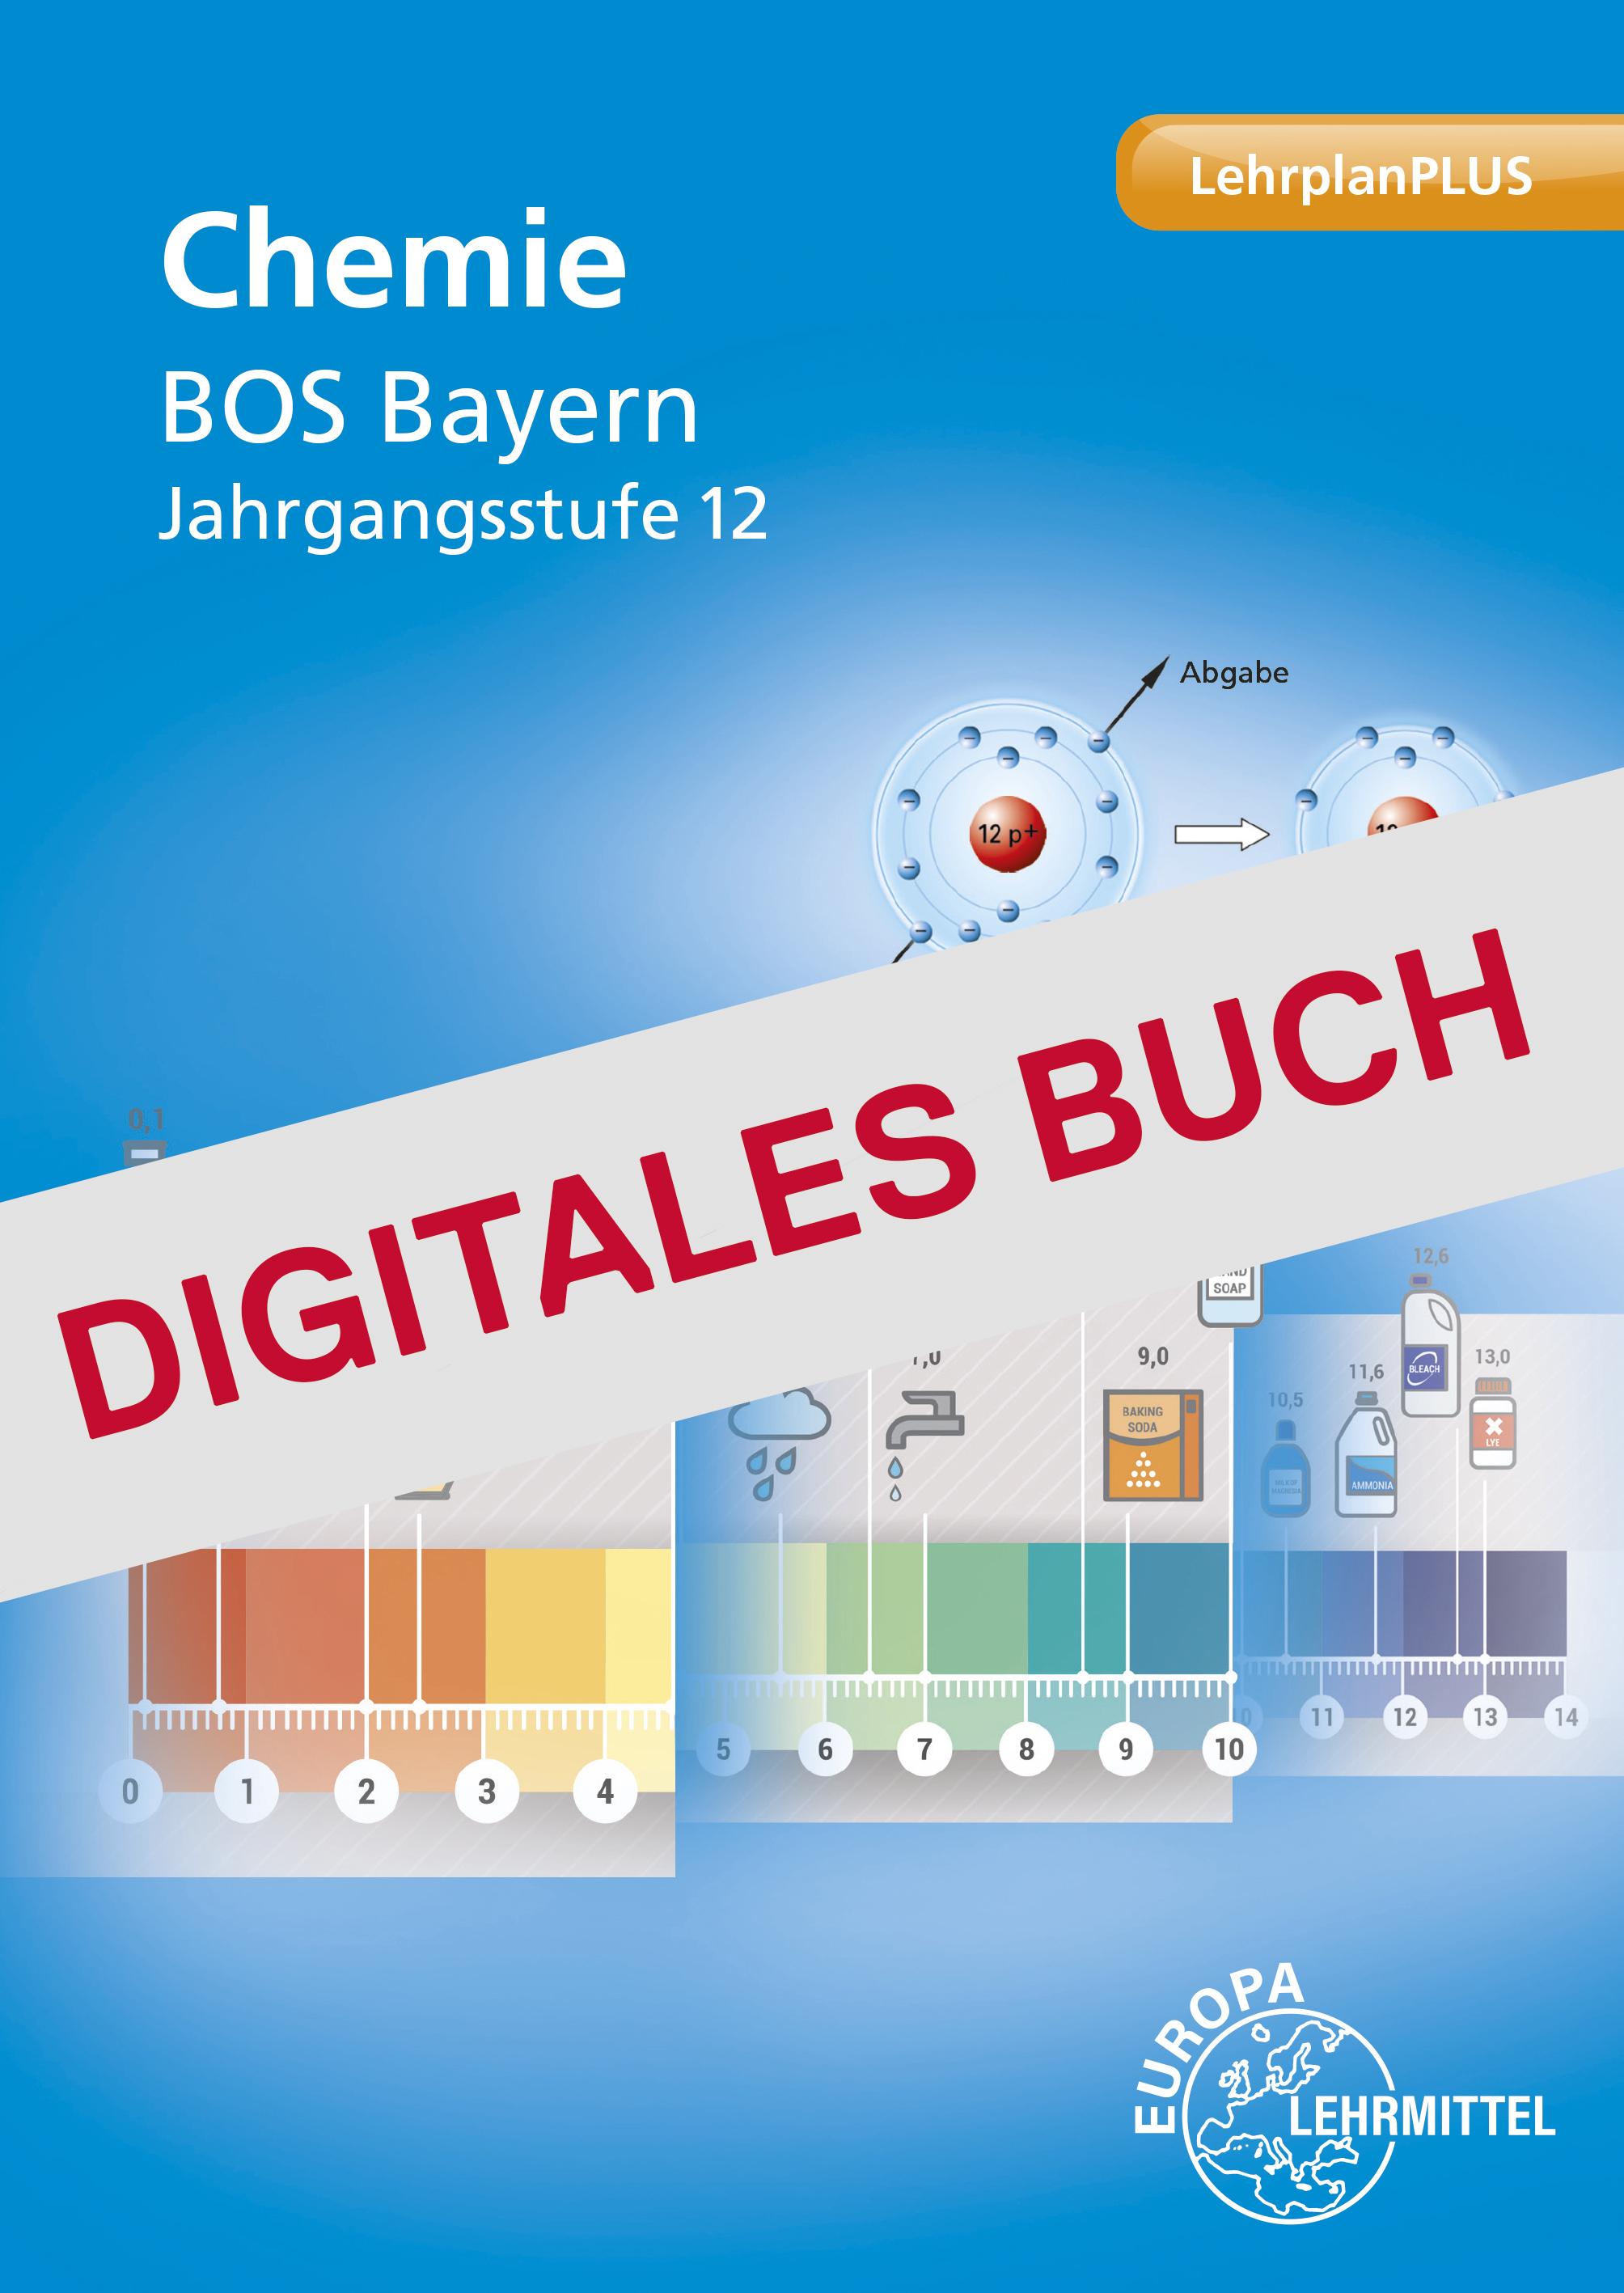 Chemie BOS Bayern Jahrgangsstufe 12 - Digitales Buch